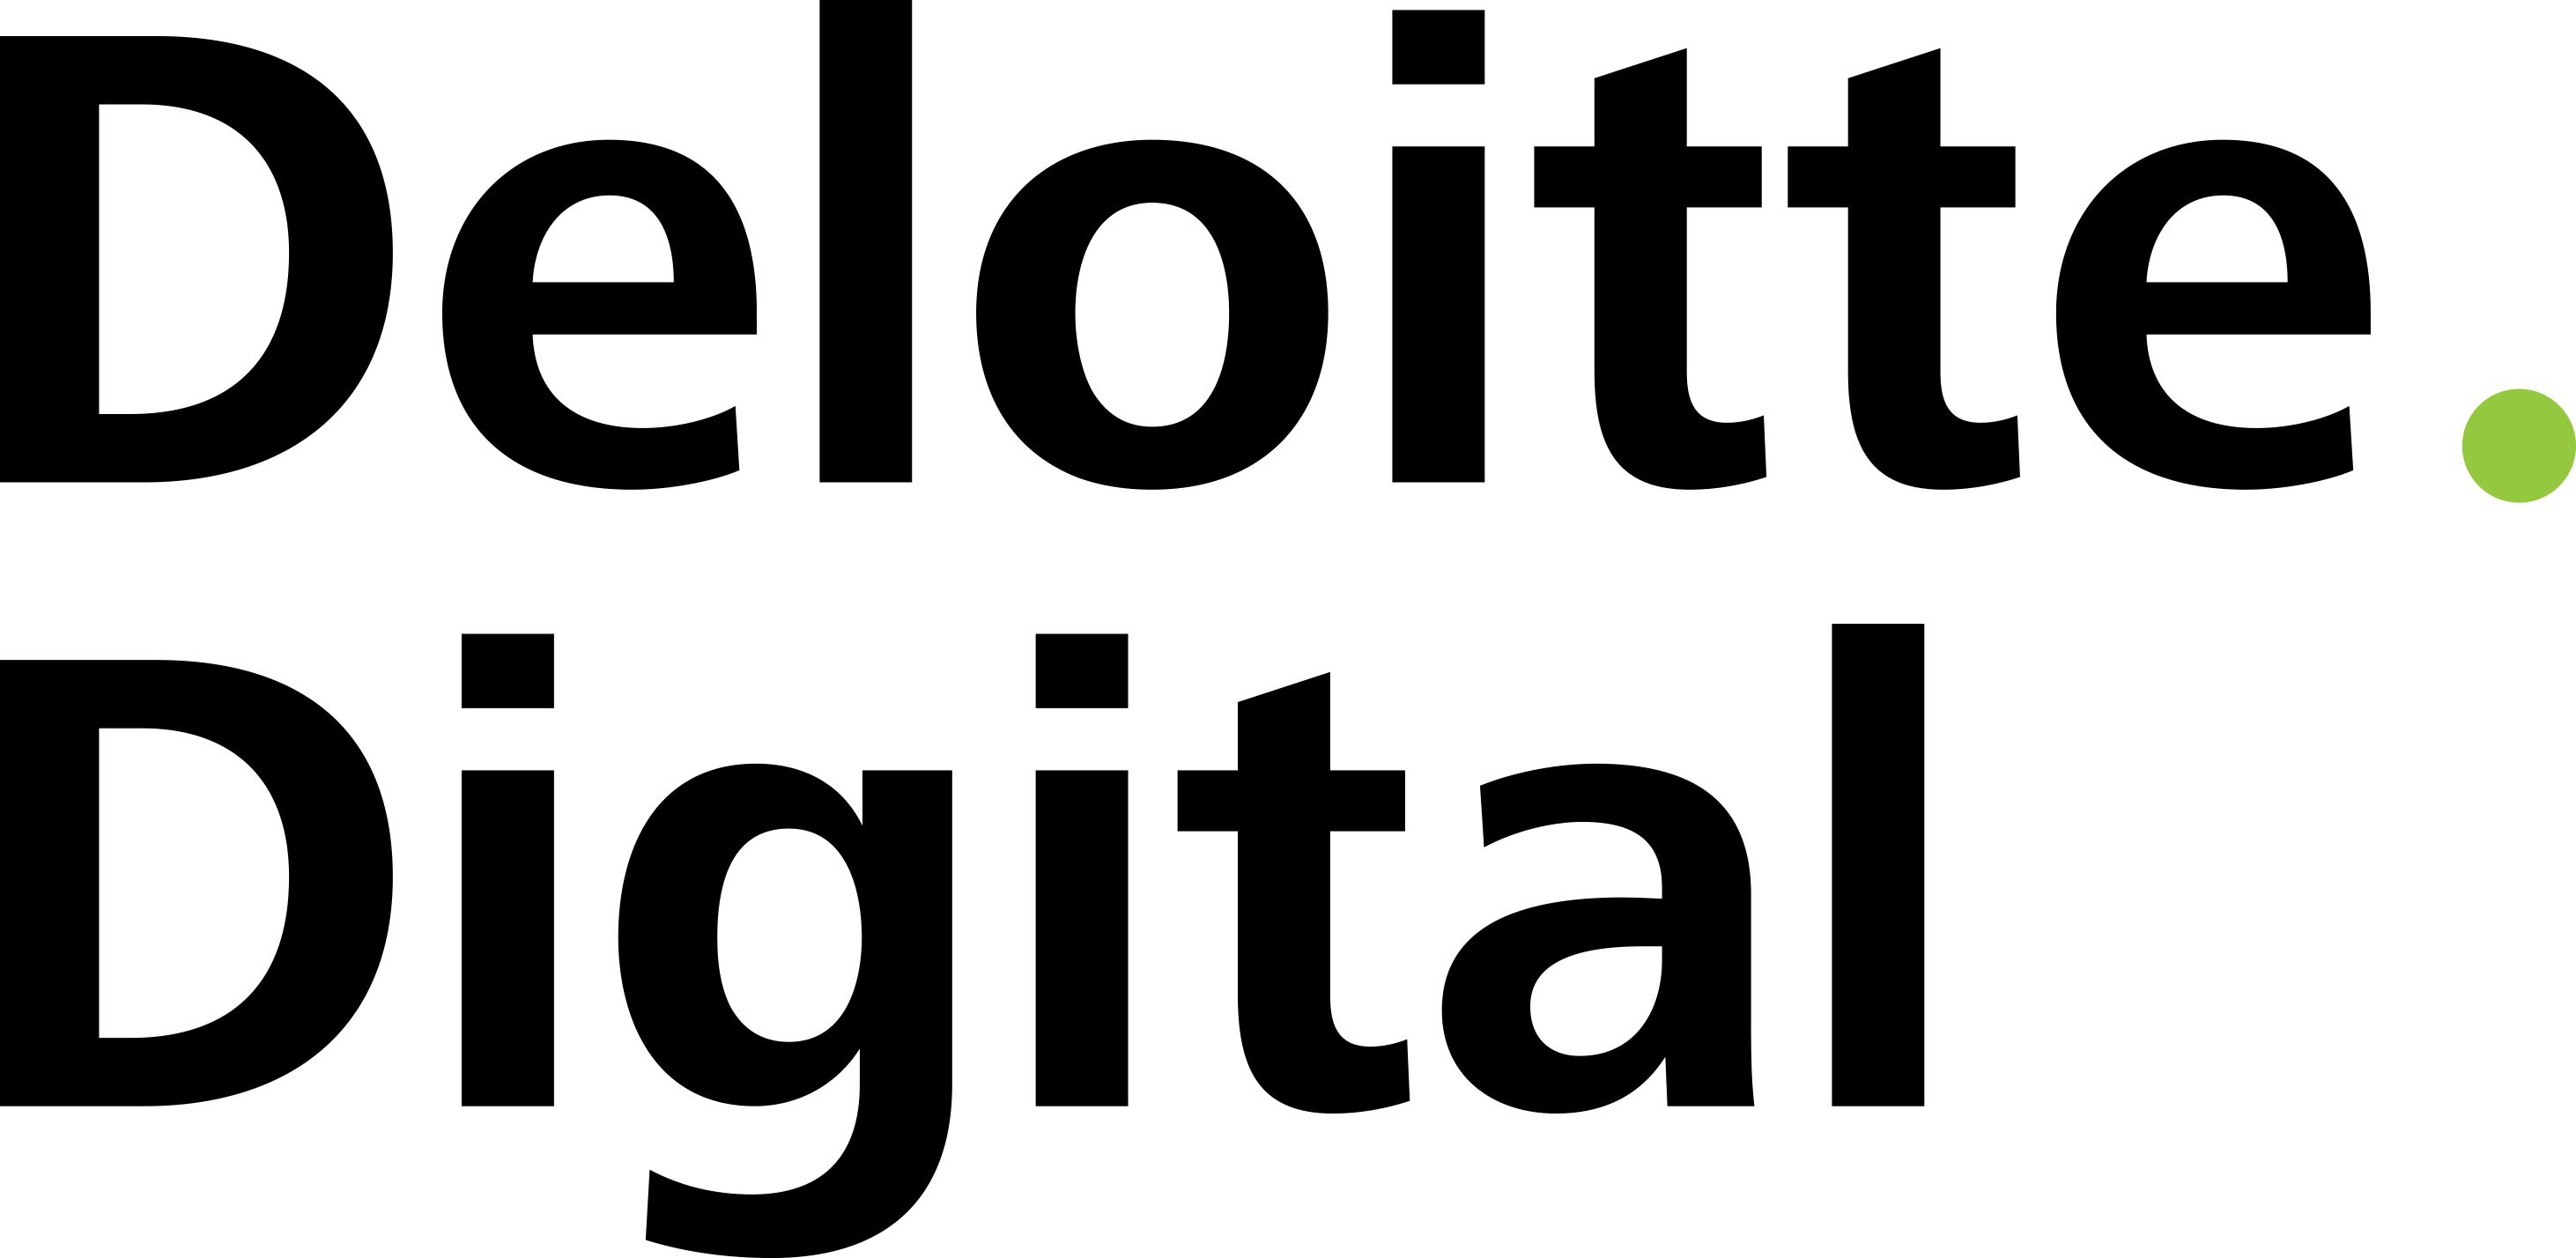 Deloitte Digital Logo - Deloitte Digital - Zuora